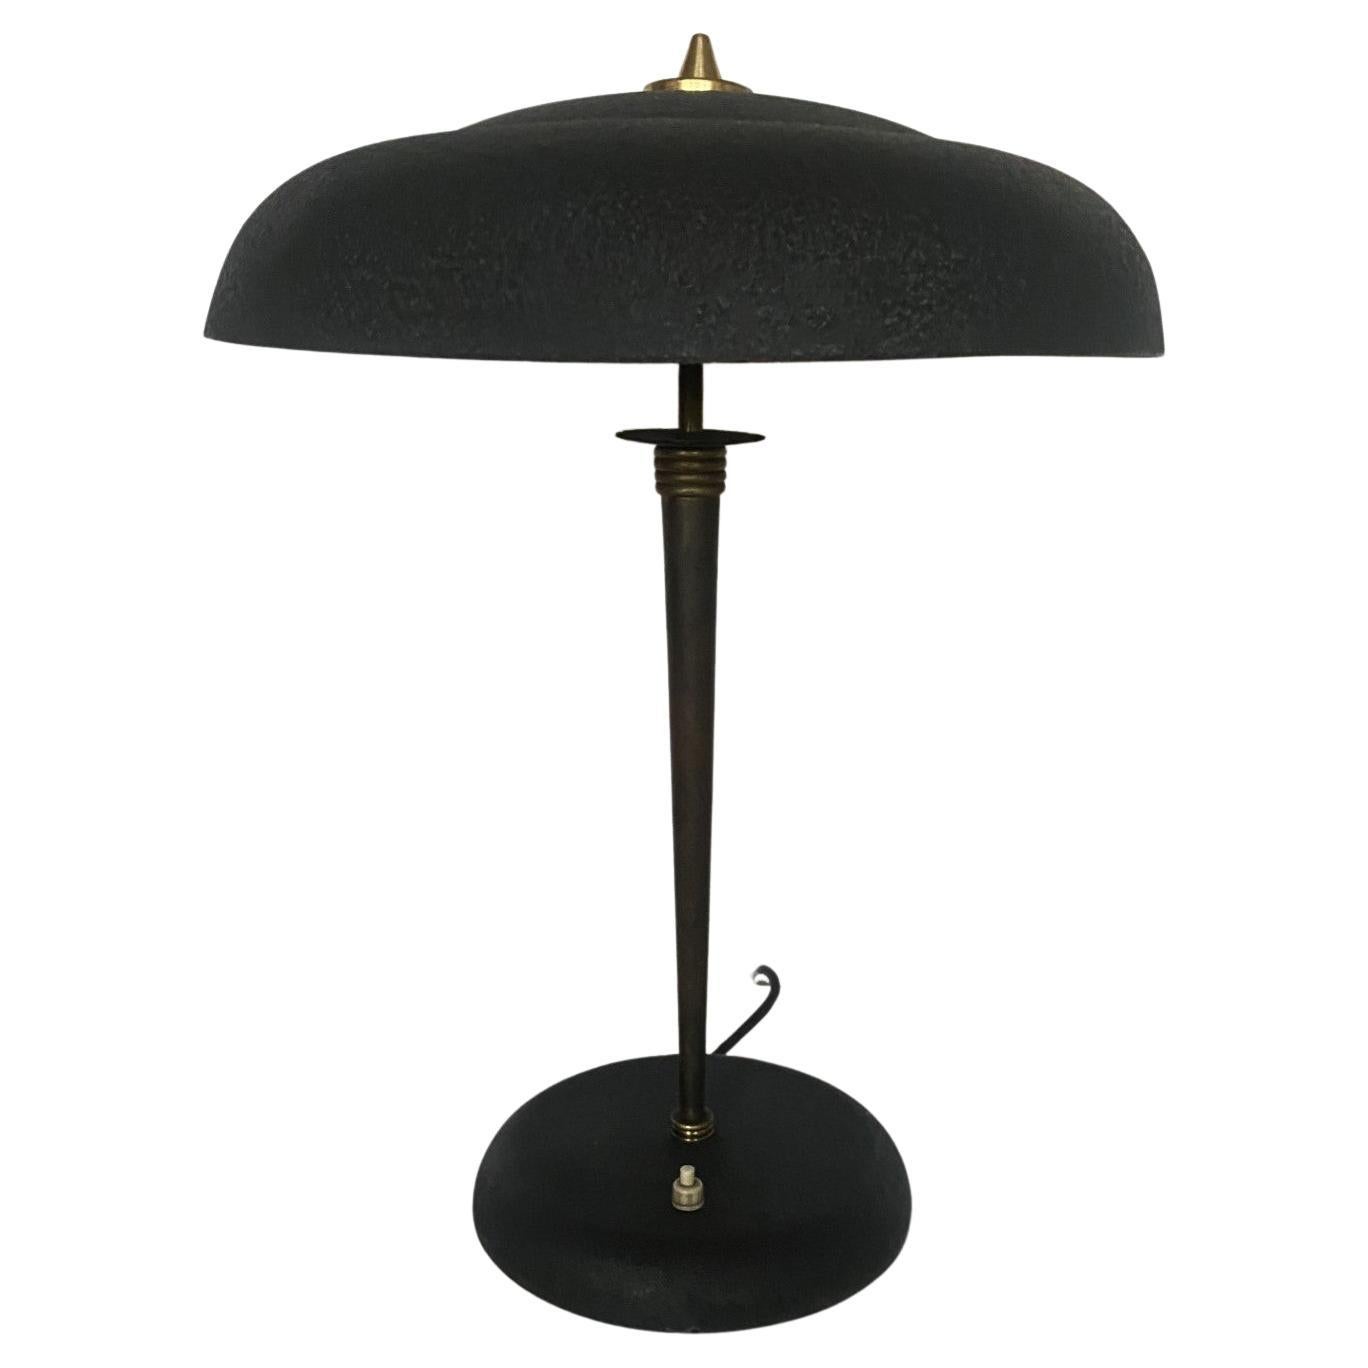 Midcentury Stilnovo Desk or Table Lamp Brass Black Enameled Metal, Iataly, 1950s